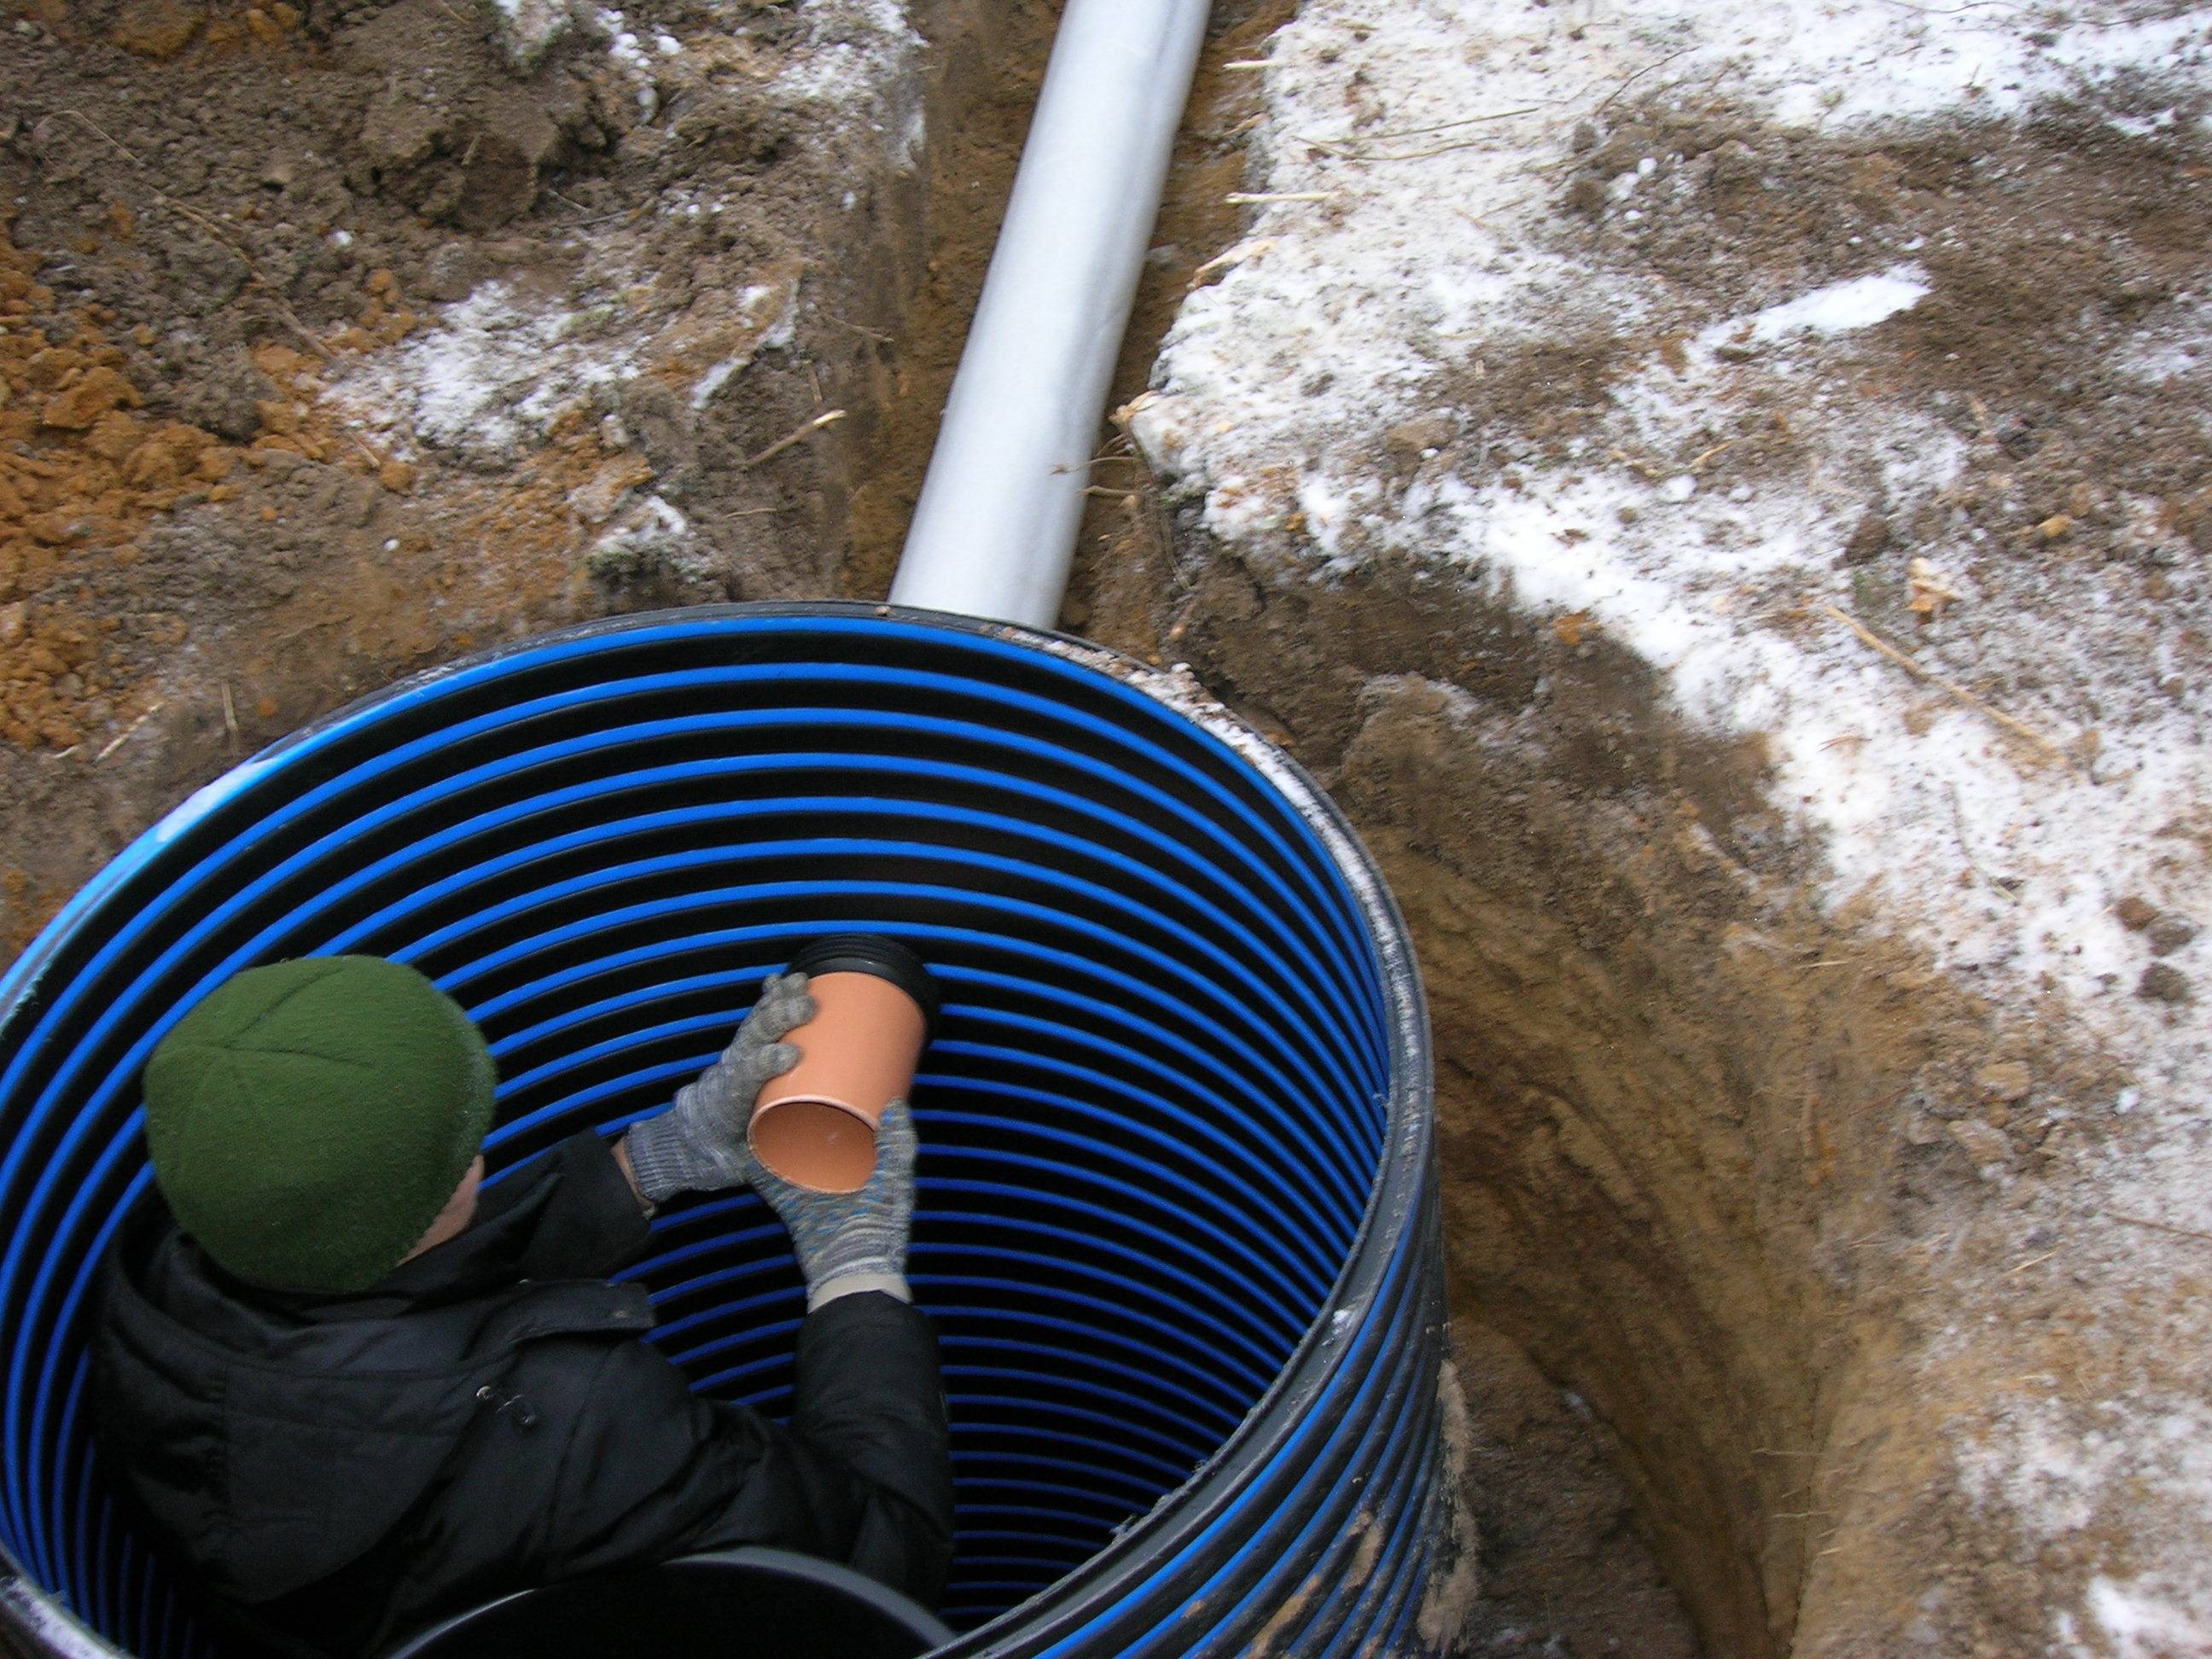 Видео трубы вода. Теплоизоляция для труб ПНД 32 В земле. Утеплитель для труб ПНД 32 под землей. Прокладка ПНД трубы 32 с утеплителем для скважины. Утепленный колодец для водопровода.